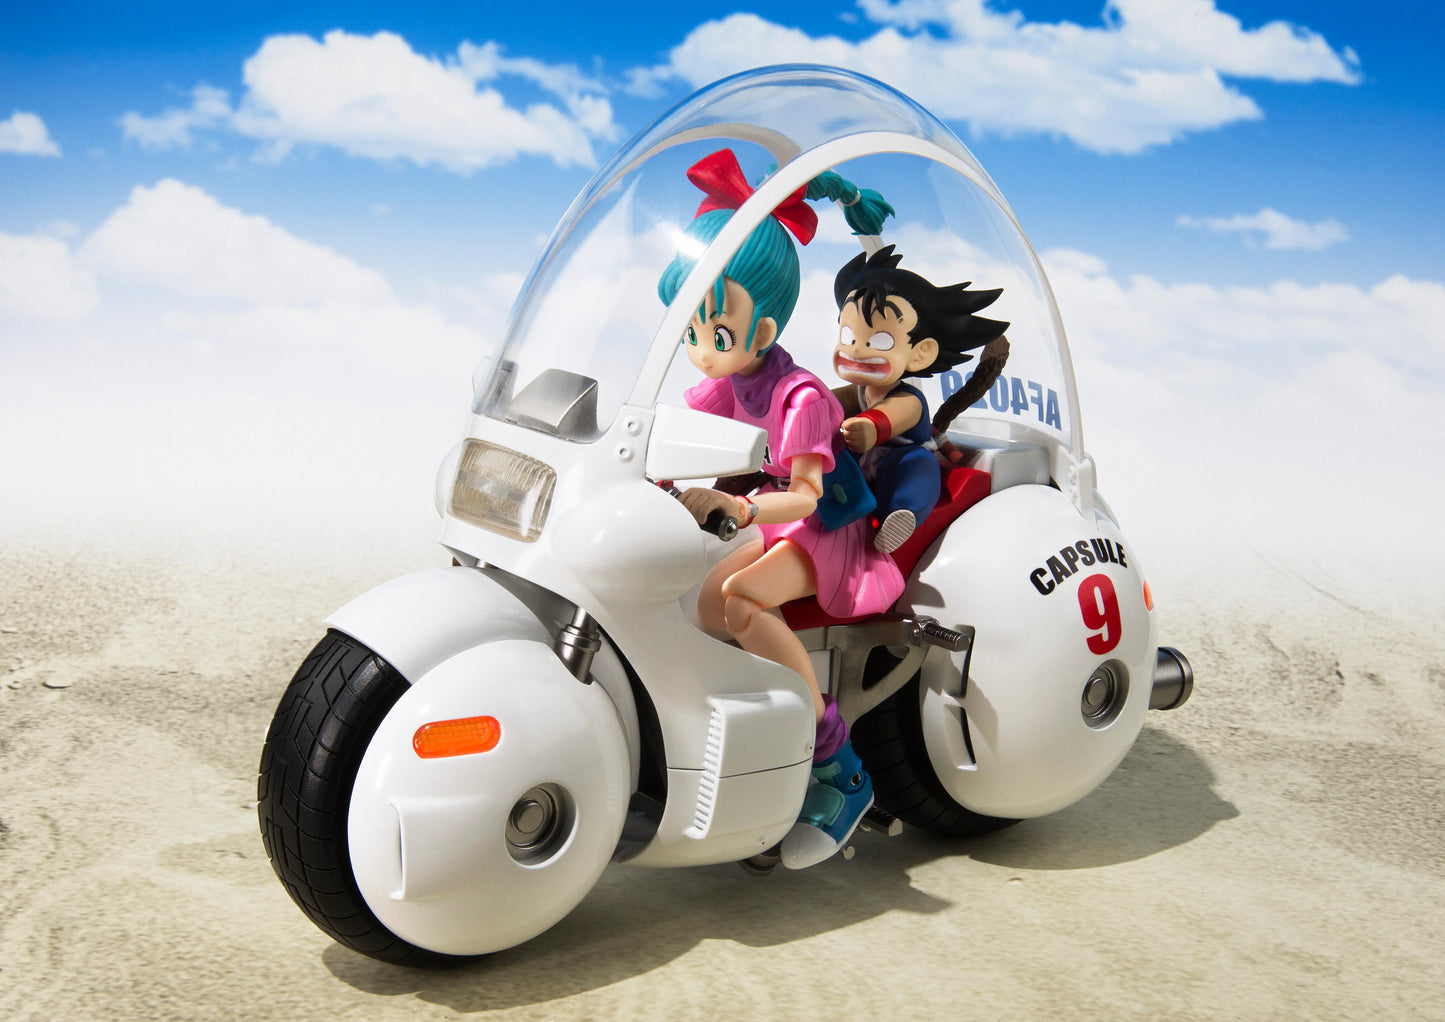 Dragon Ball S.H.Figuarts Bulma’s Capsule No. 9 Bike (Re-issue)